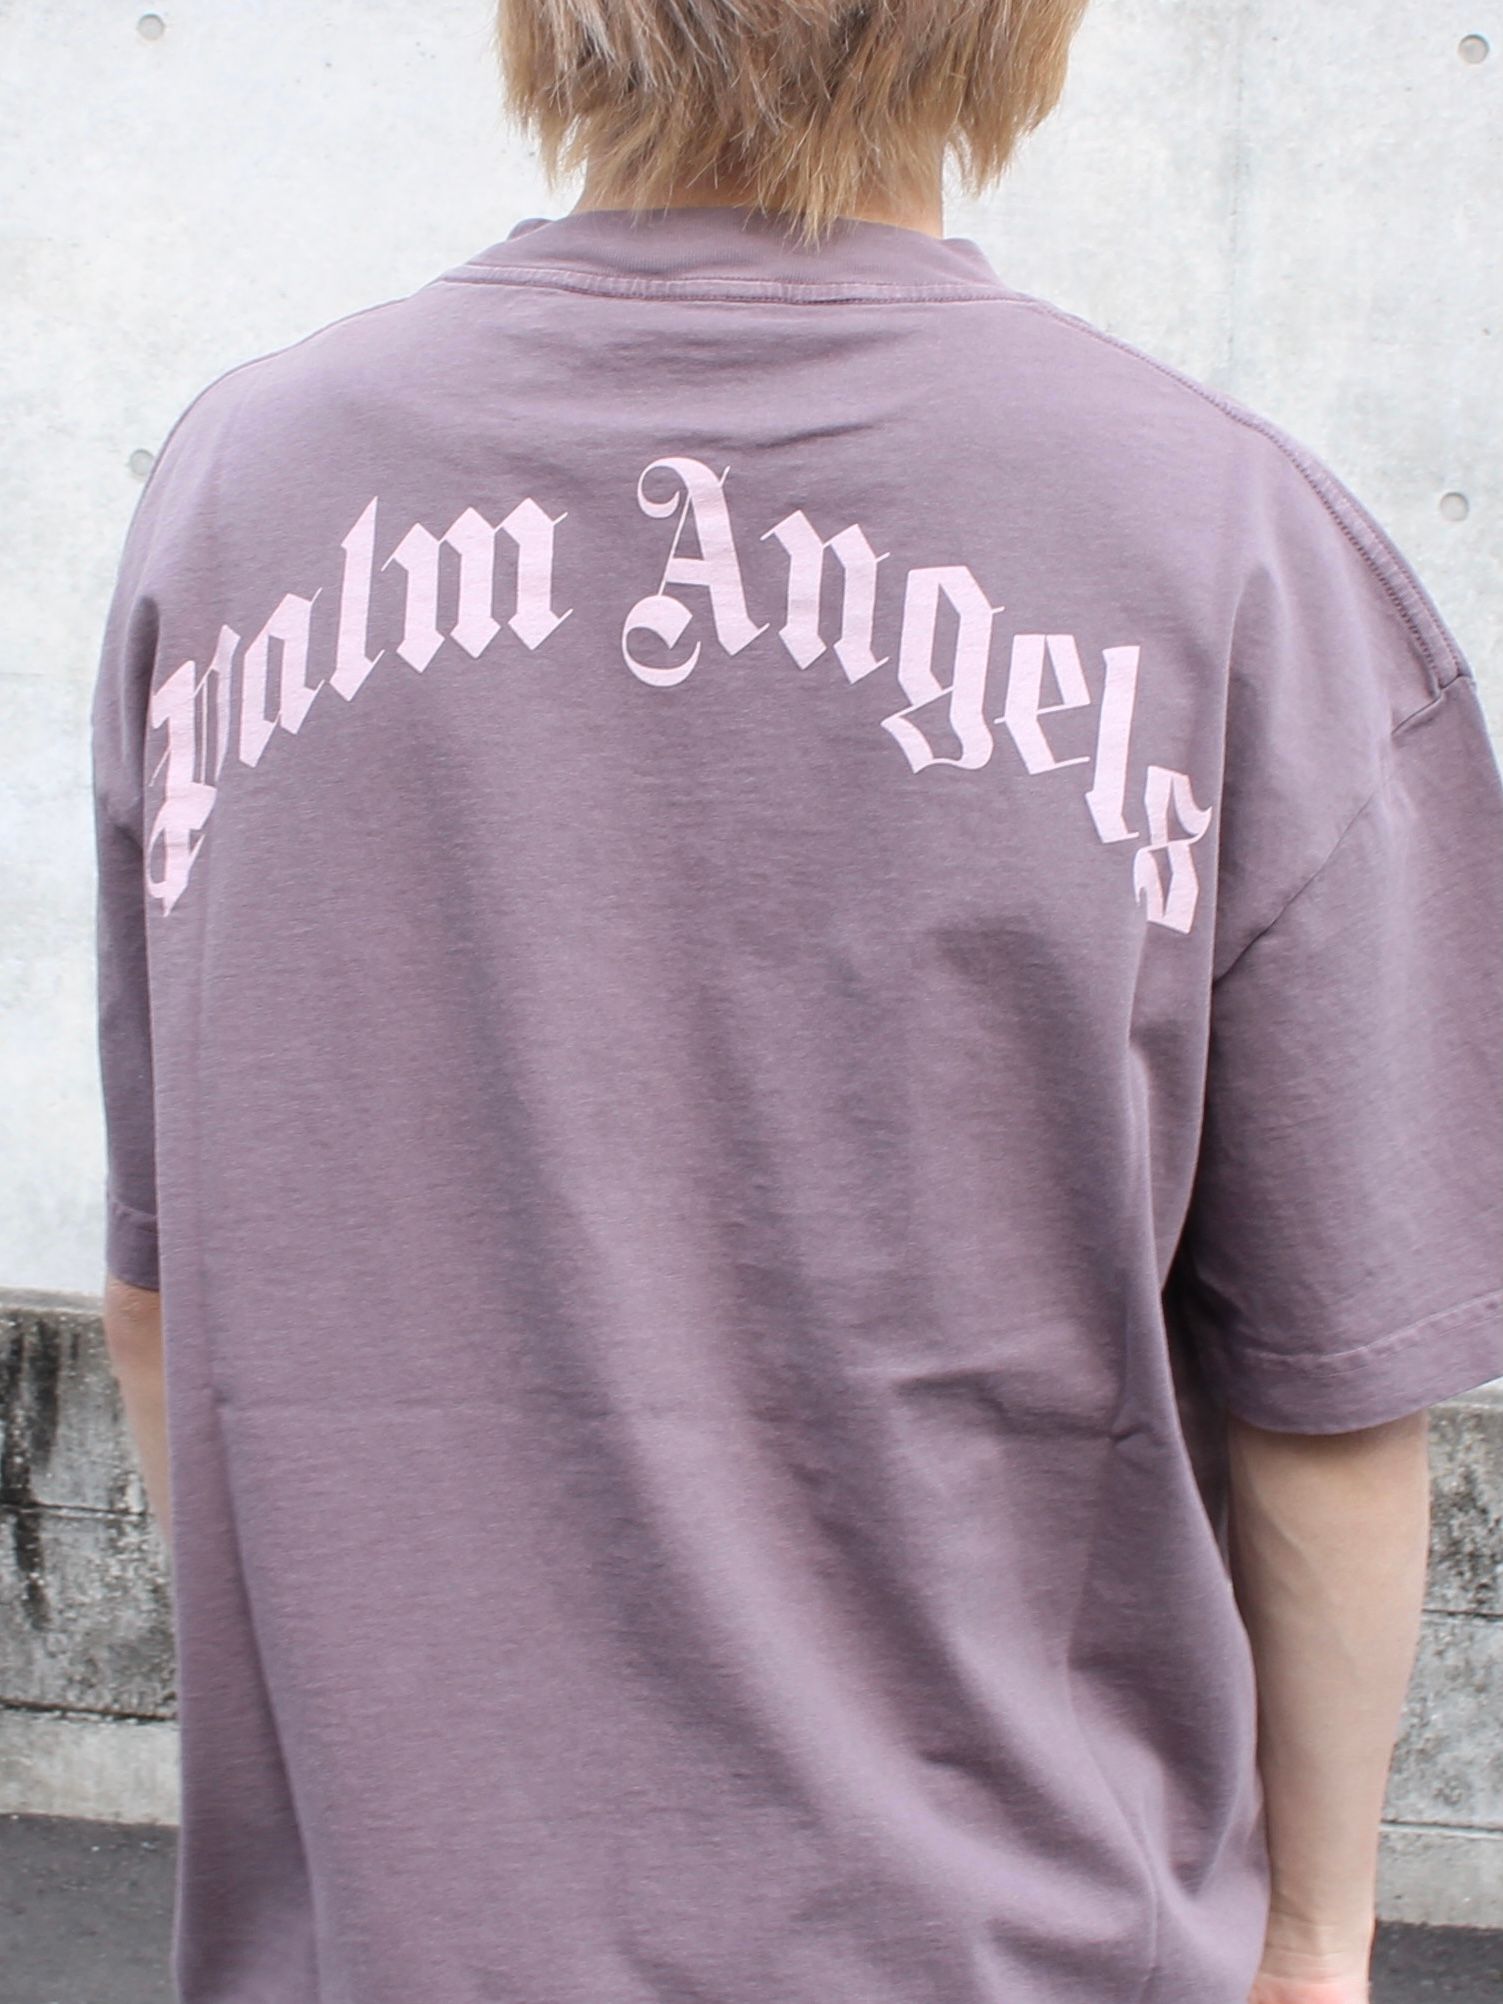 PALM ANGELS - テディベア Tシャツ / PALM ANGELS BEAR TEE / ブラック 